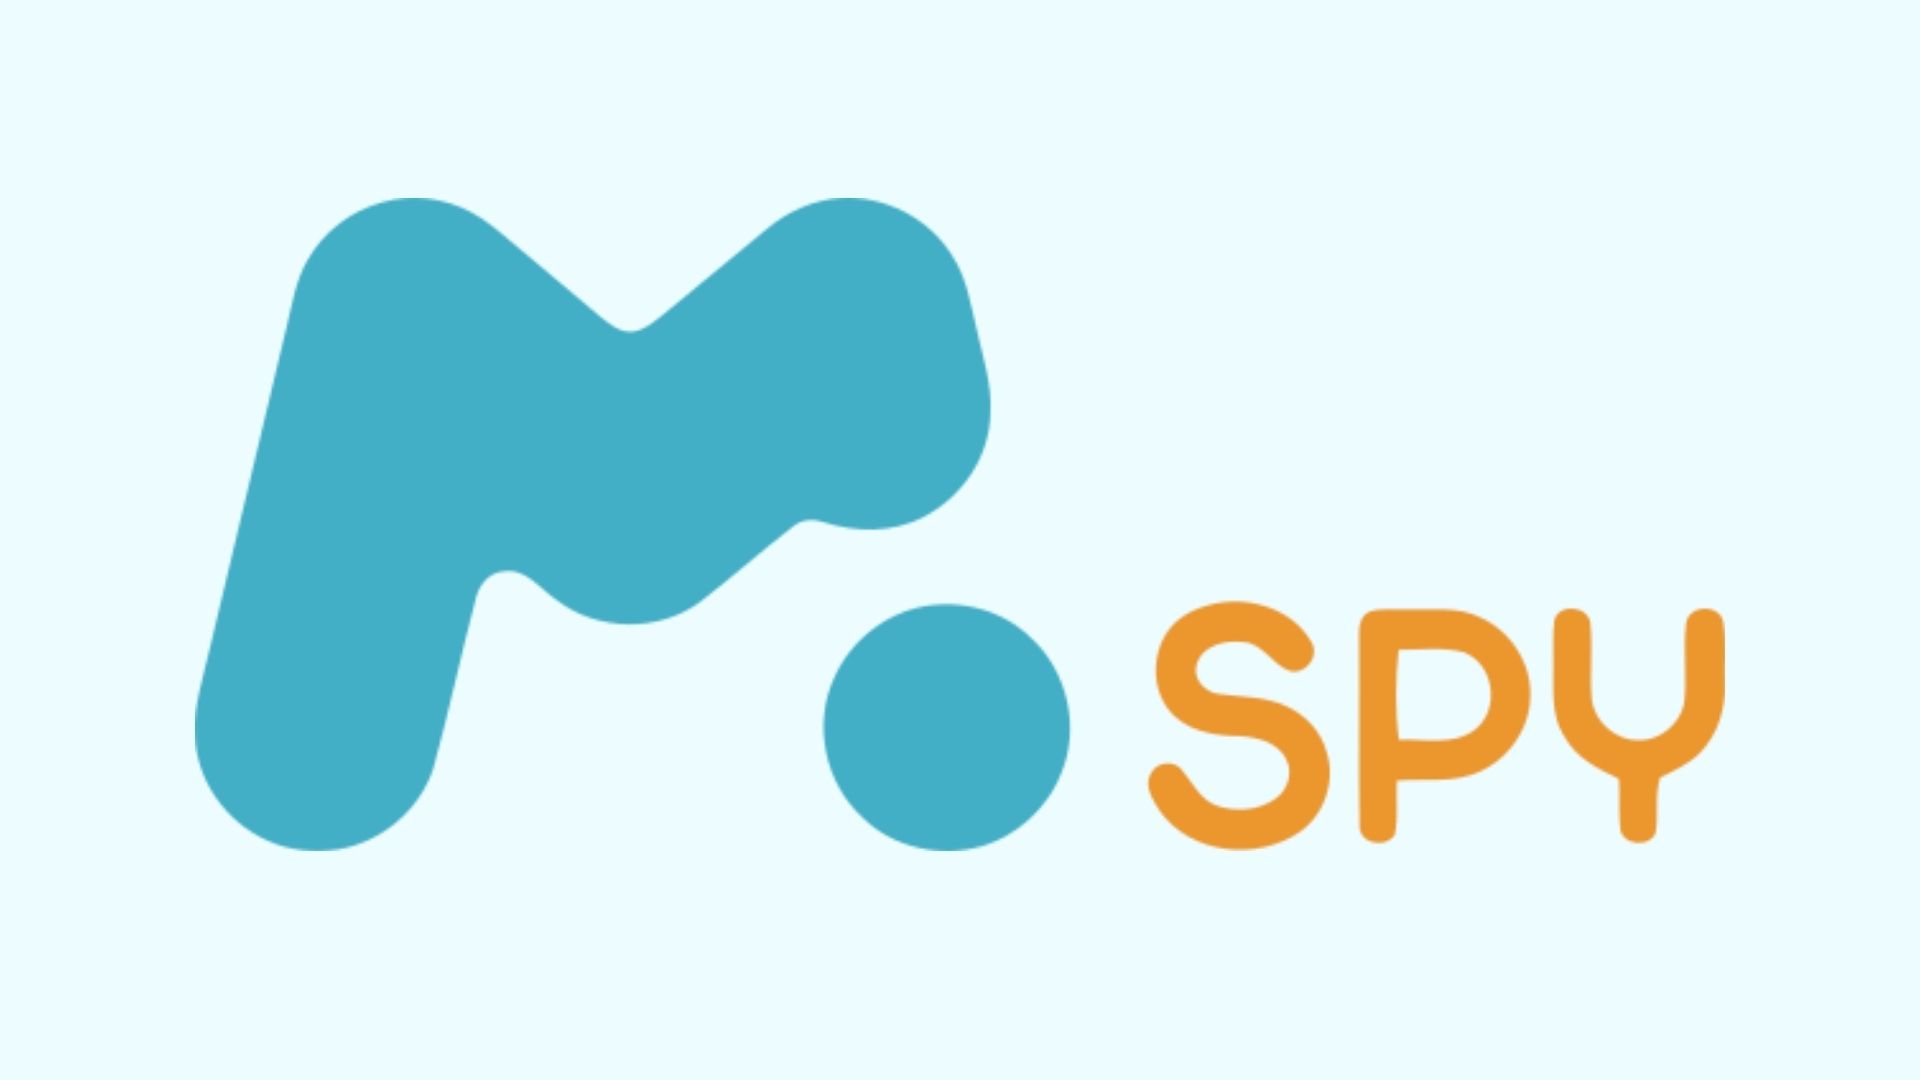 mSpy-logo image